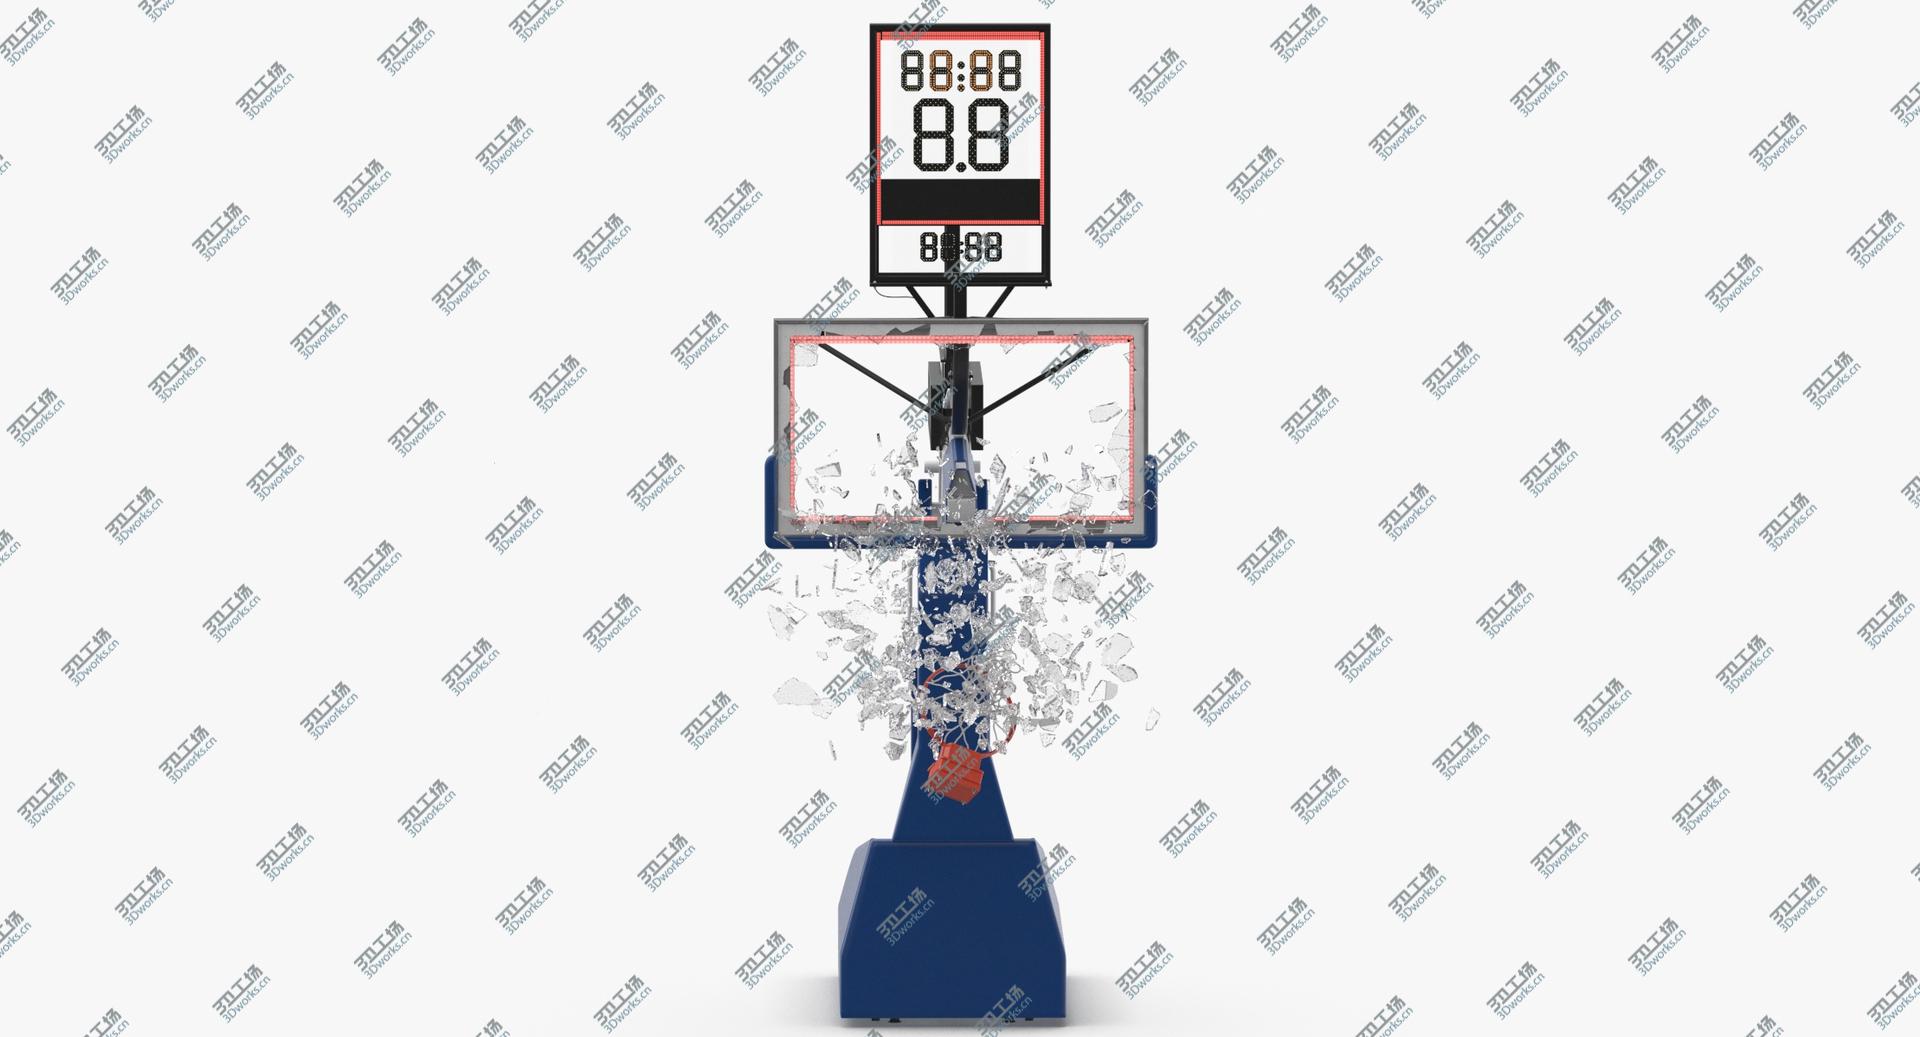 images/goods_img/202104092/3D Basketball Board Breaking  - Pose 03 model/4.jpg